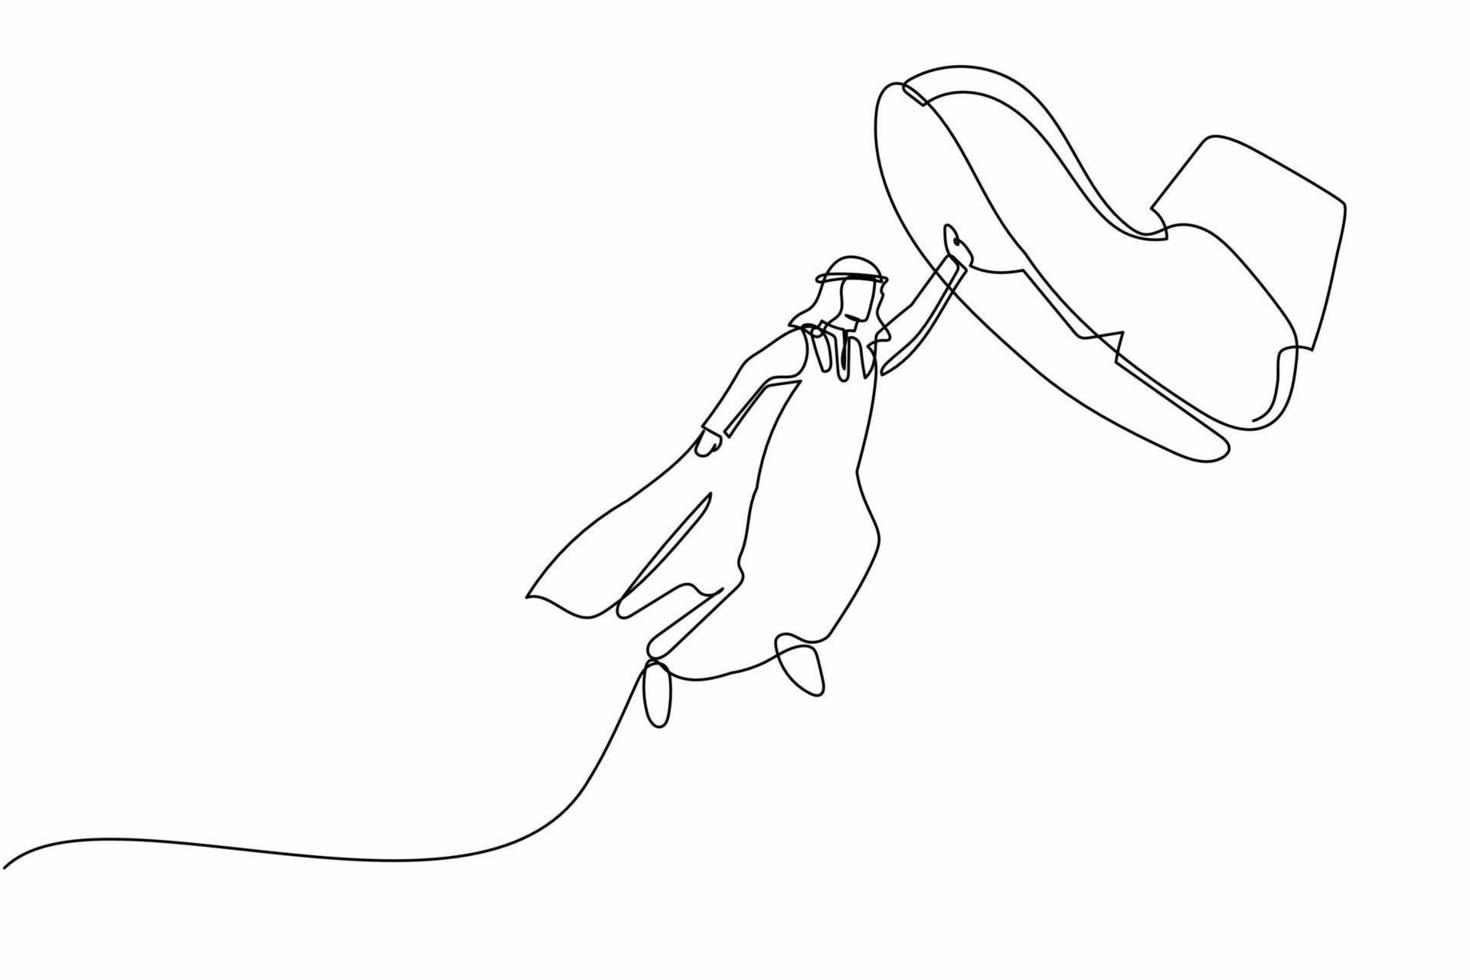 une seule ligne dessinant un jeune homme d'affaires arabe volant avec des capes de héros contre des chaussures géantes piétinant. un employé de bureau vole contre un pas de pied géant. illustration vectorielle graphique de conception de ligne continue vecteur